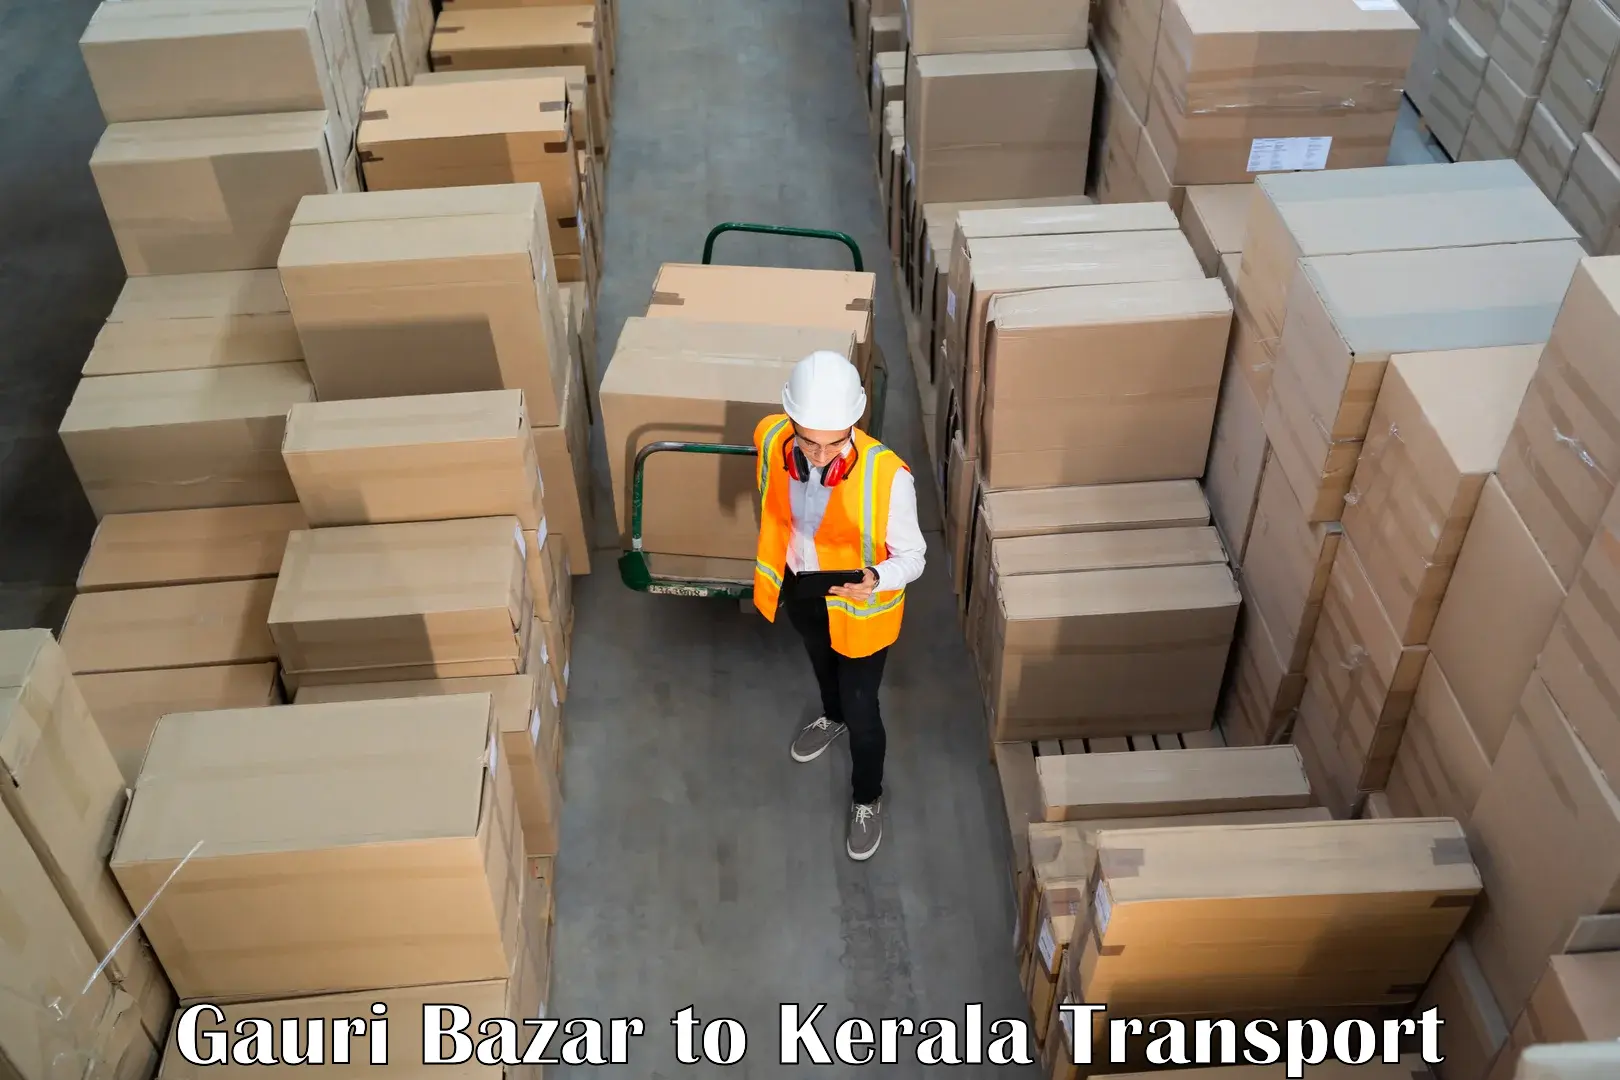 Delivery service Gauri Bazar to Kazhakkoottam